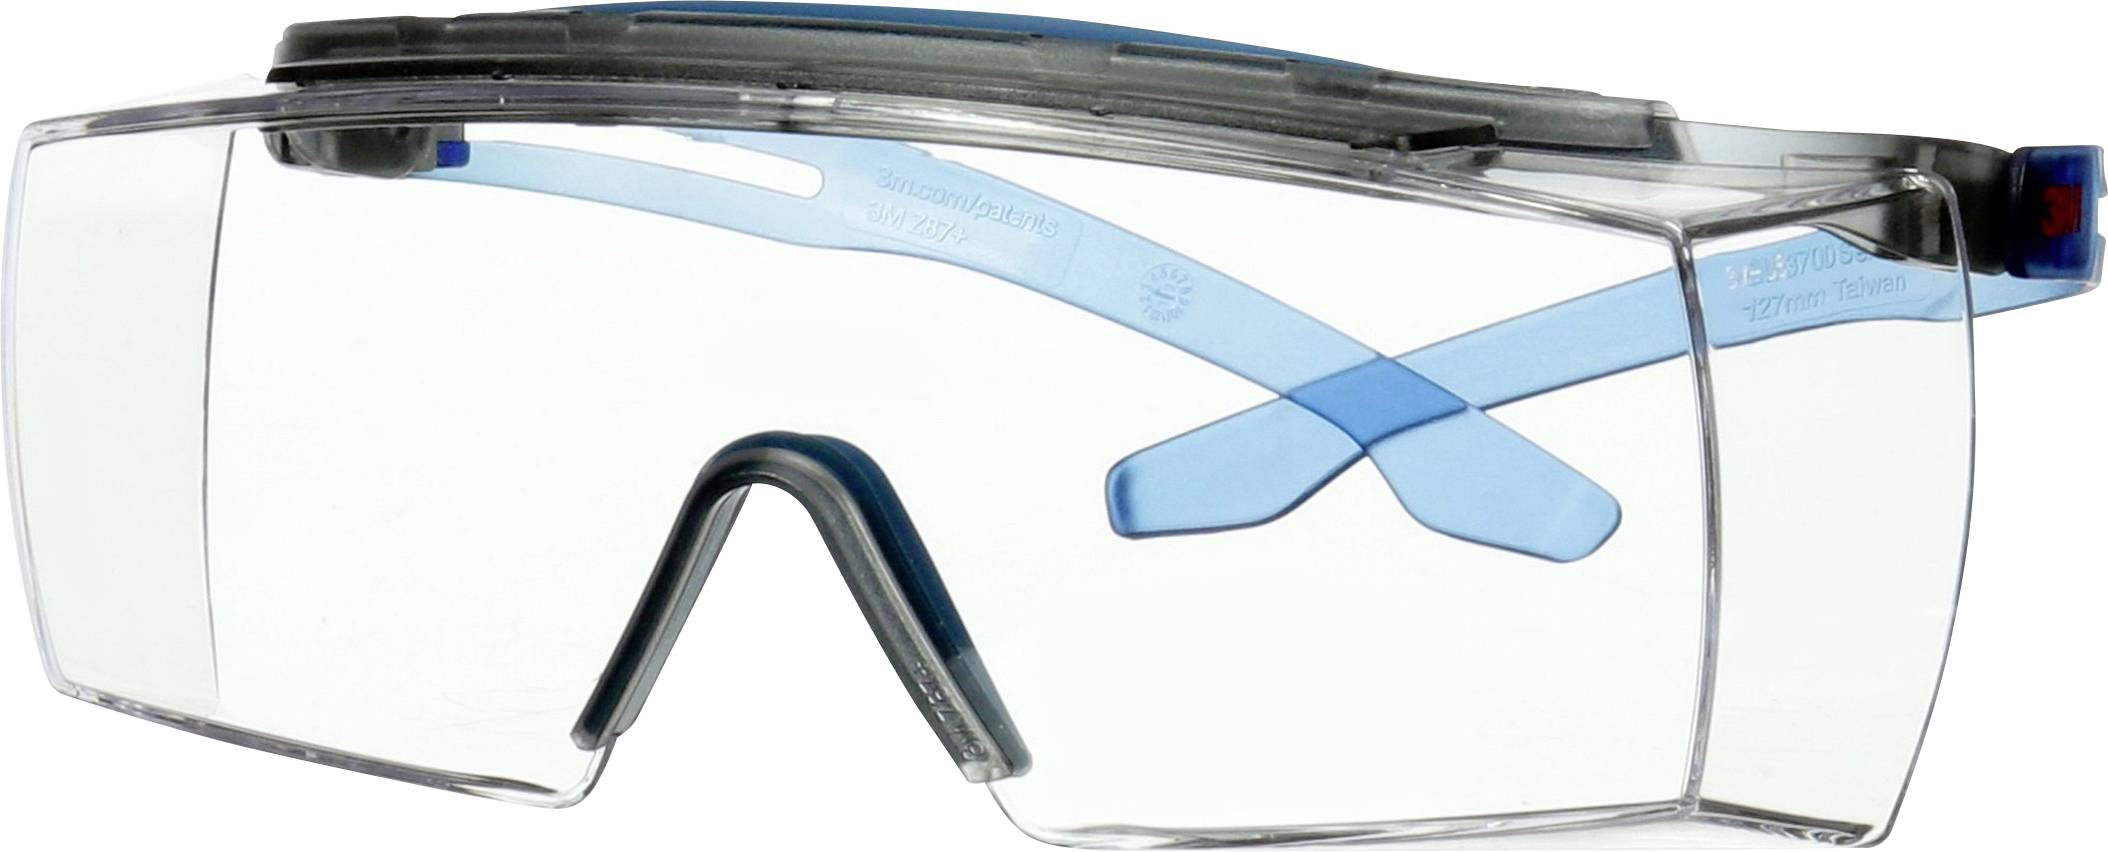 3M SecureFit 3700 - Sicherheitsbrille - Montagearbeit - Bau-/Renovierungsarbeiten - Schleifarbeiten